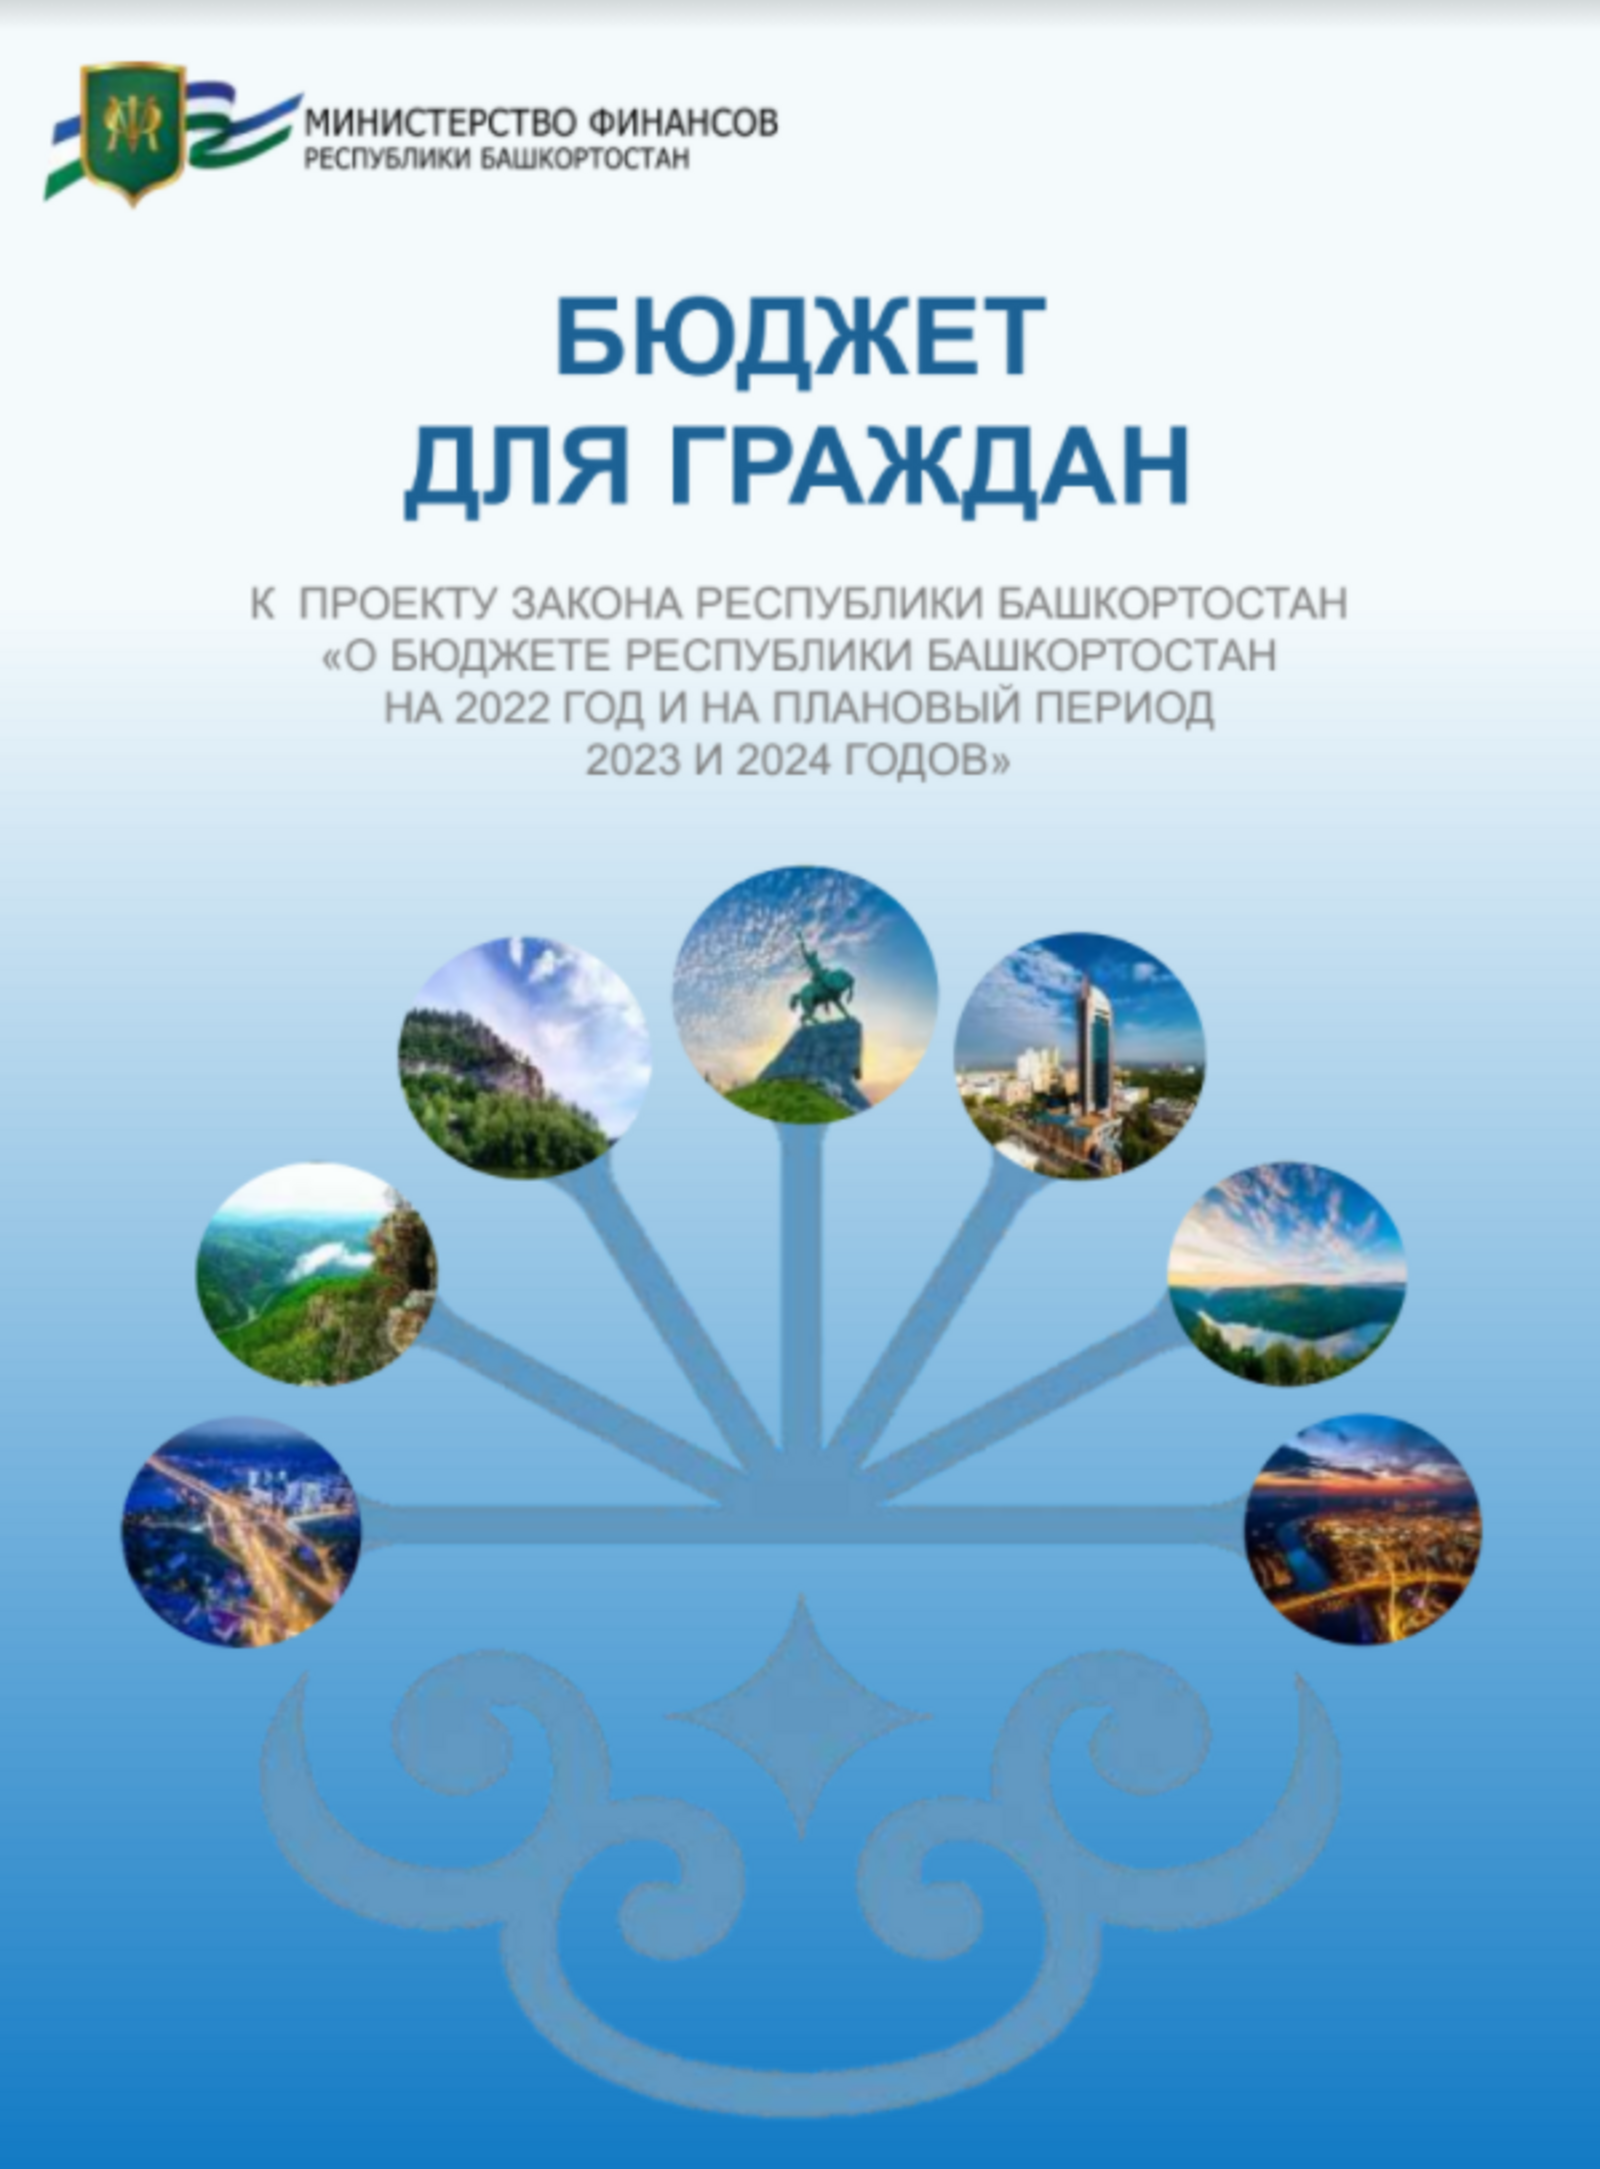 Информация о проекте закона Республики Башкортостан  «О бюджете Республики Башкортостан на 2022 год  и на плановый период 2023 и 2024 годов»